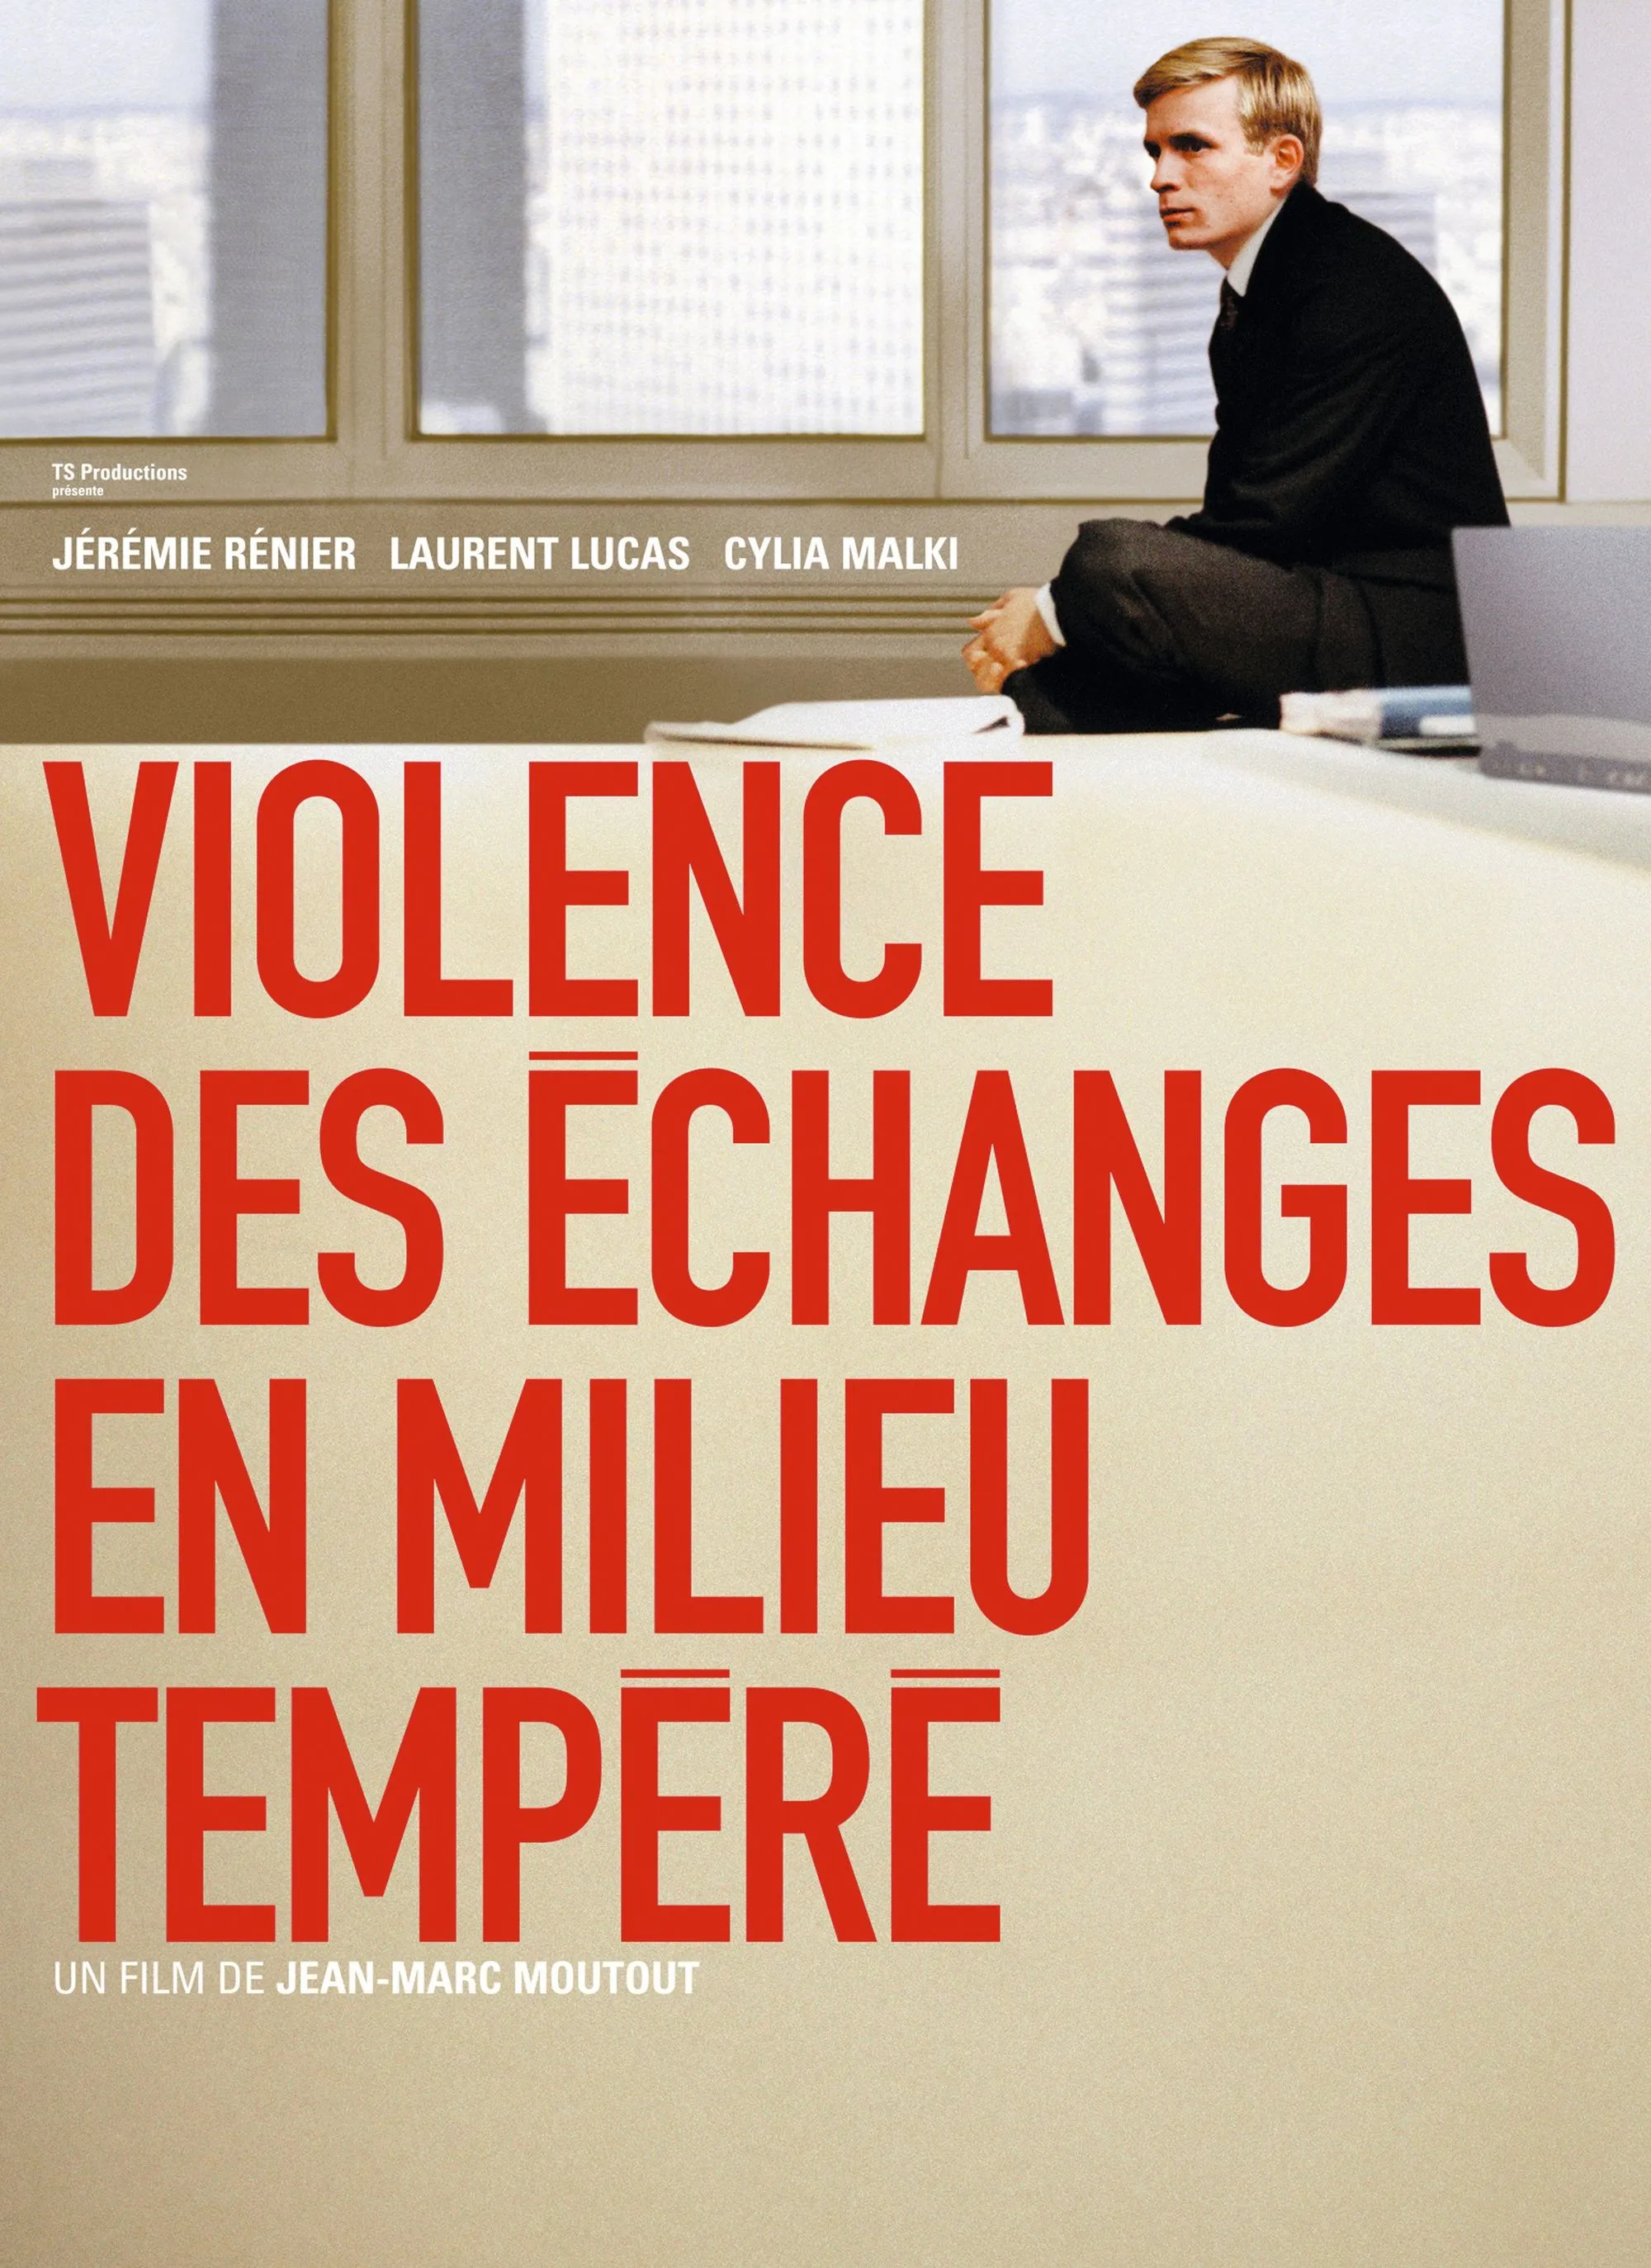 Violence des échanges en milieu tempéré, de Jean-Marc Moutout, 2004.